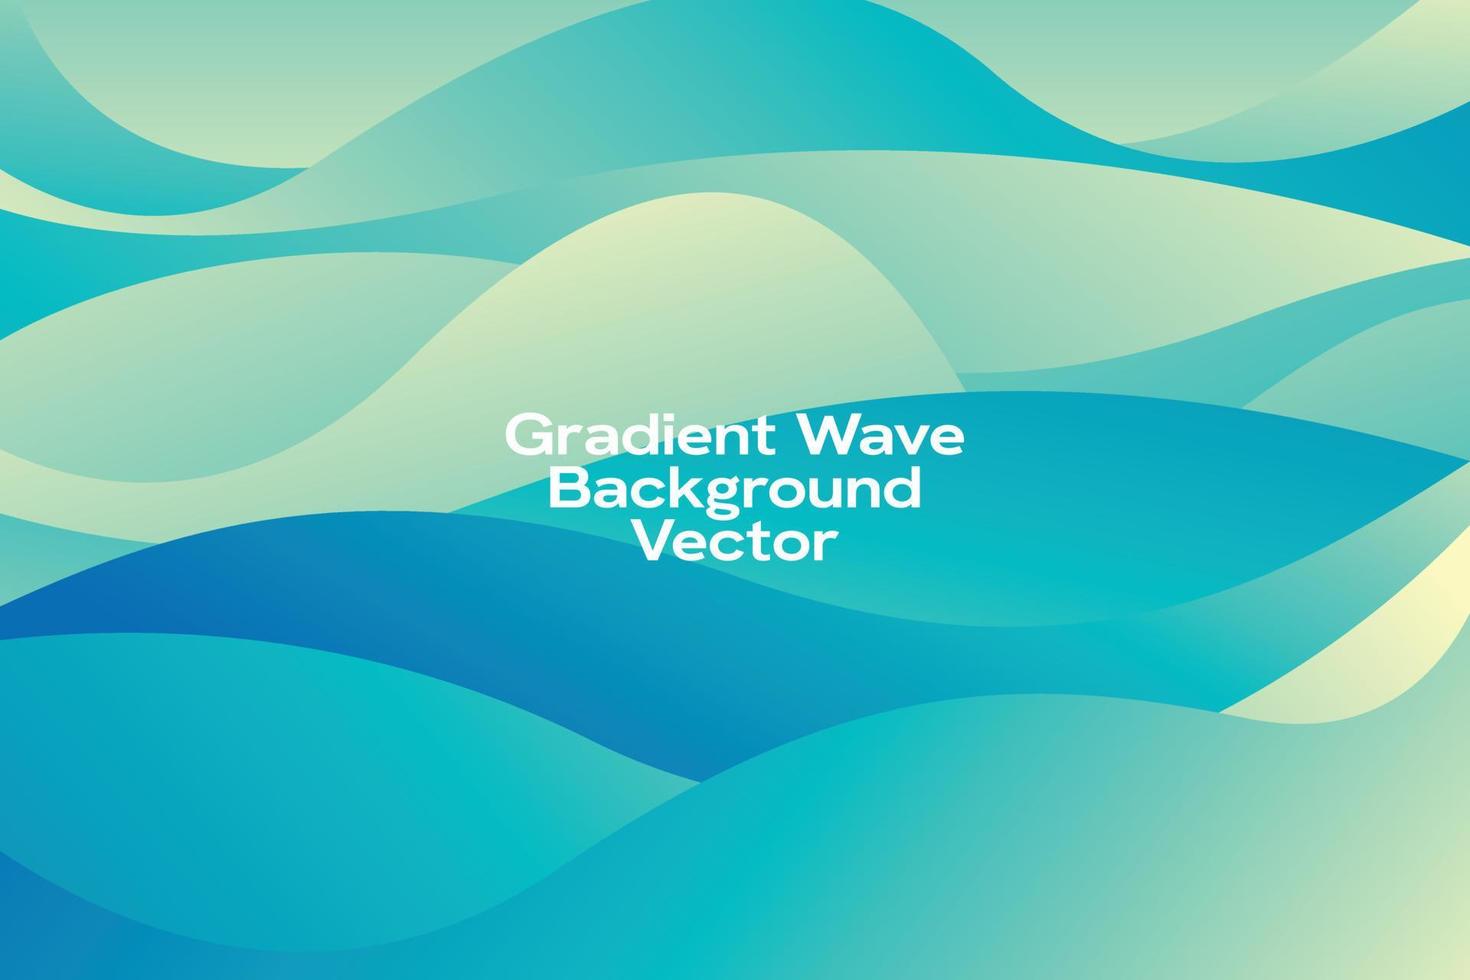 fundo de ilustração vetorial abstrato dinâmico de onda gradiente vetor